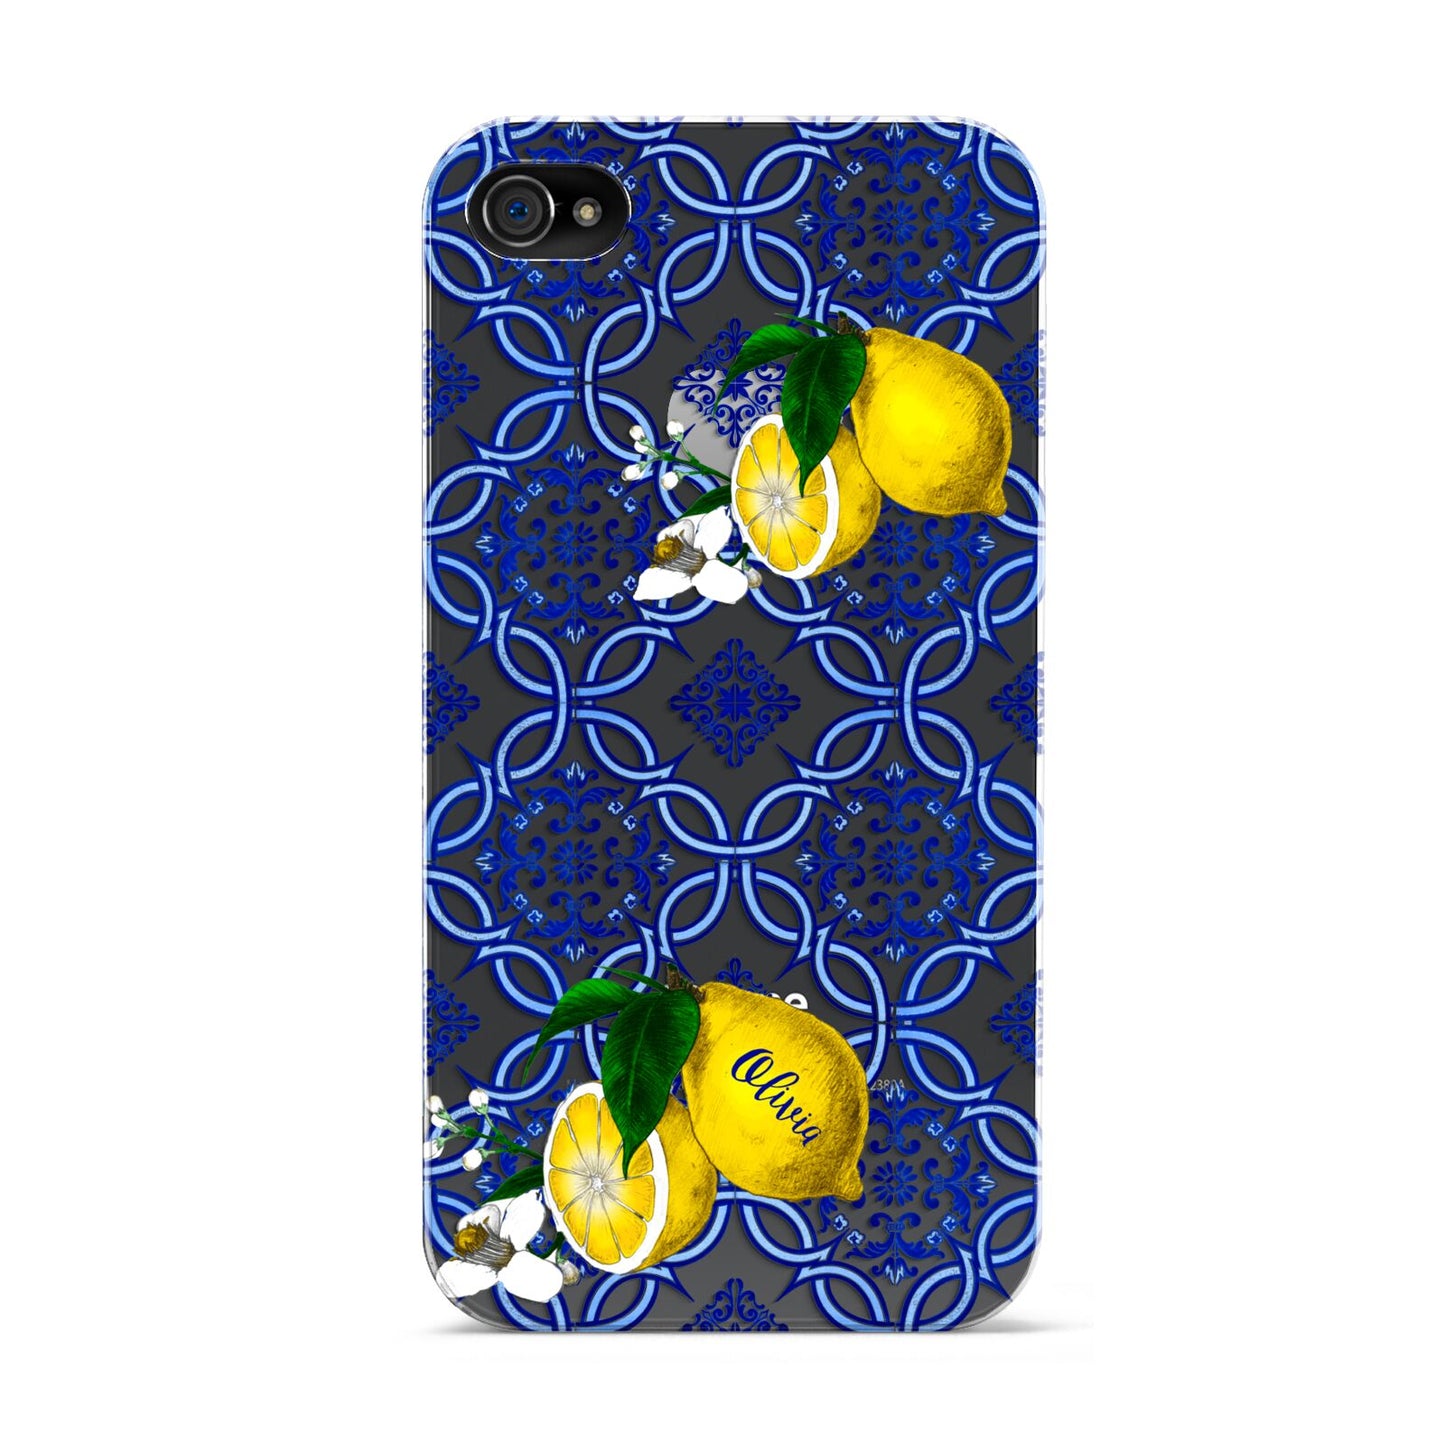 Personalised Mediterranean Tiles and Lemons Apple iPhone 4s Case